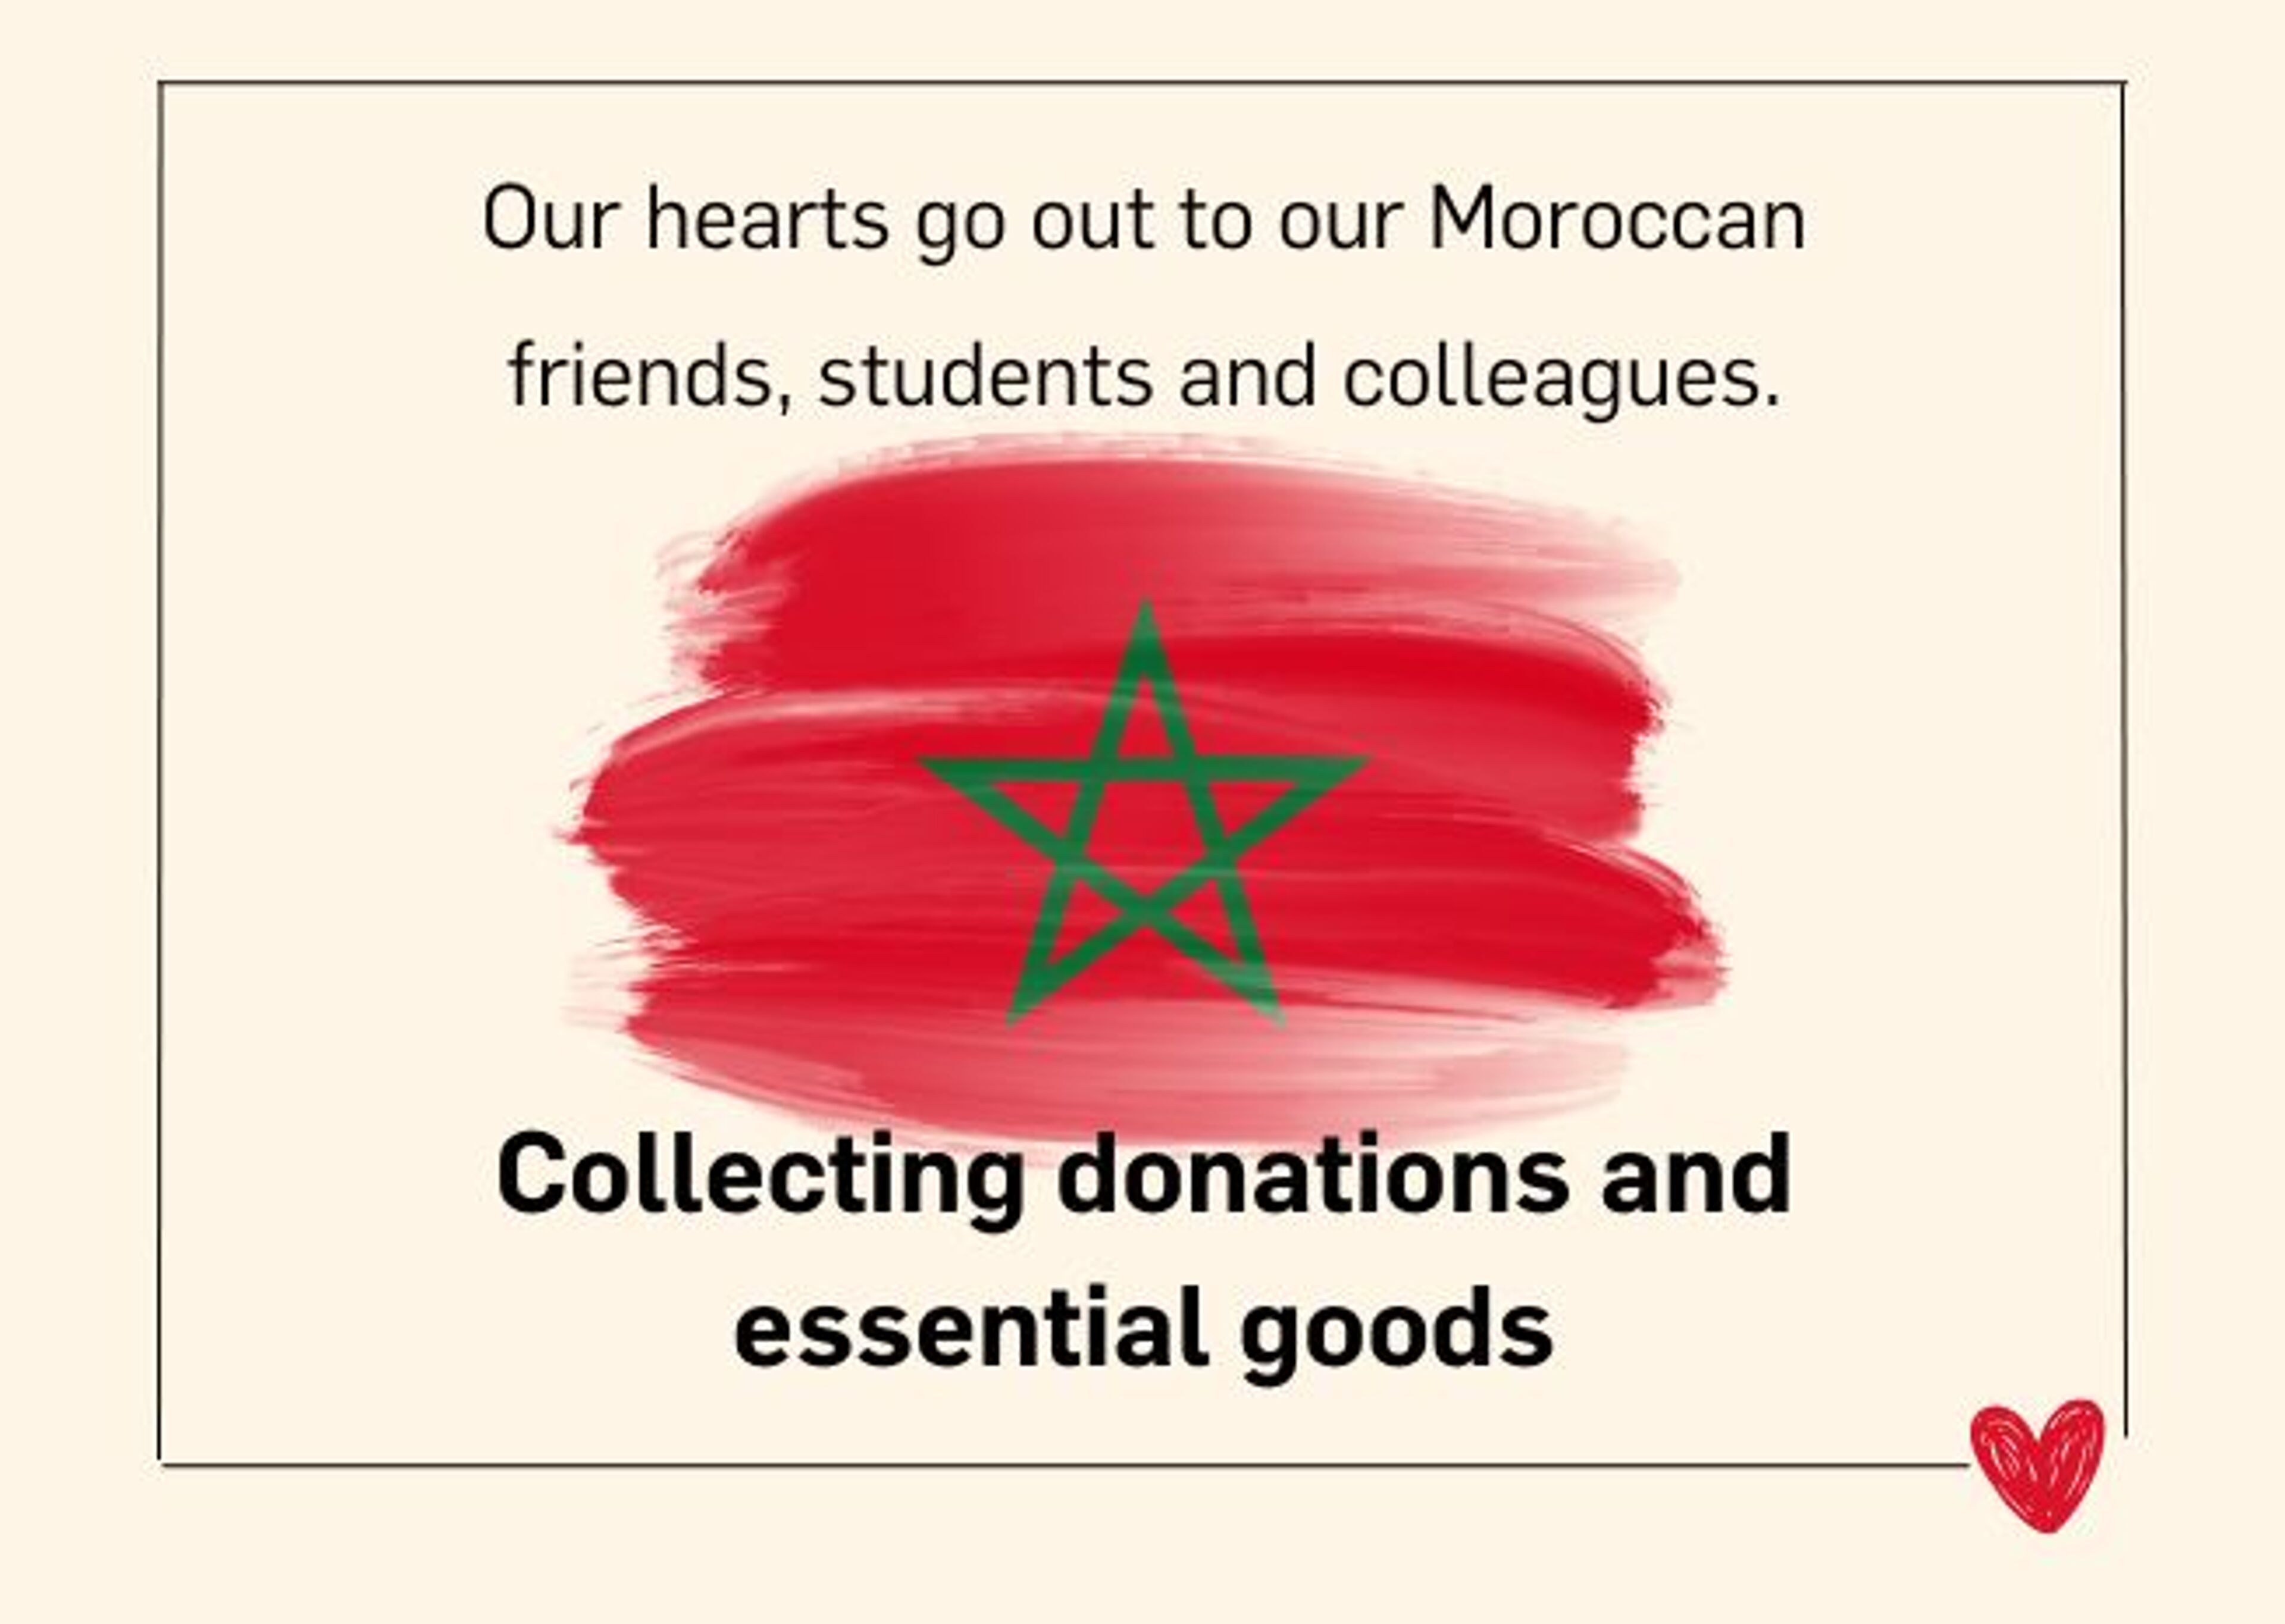 Image avec un message de soutien aux Marocains et un appel aux dons et biens essentiels, sur le drapeau marocain.